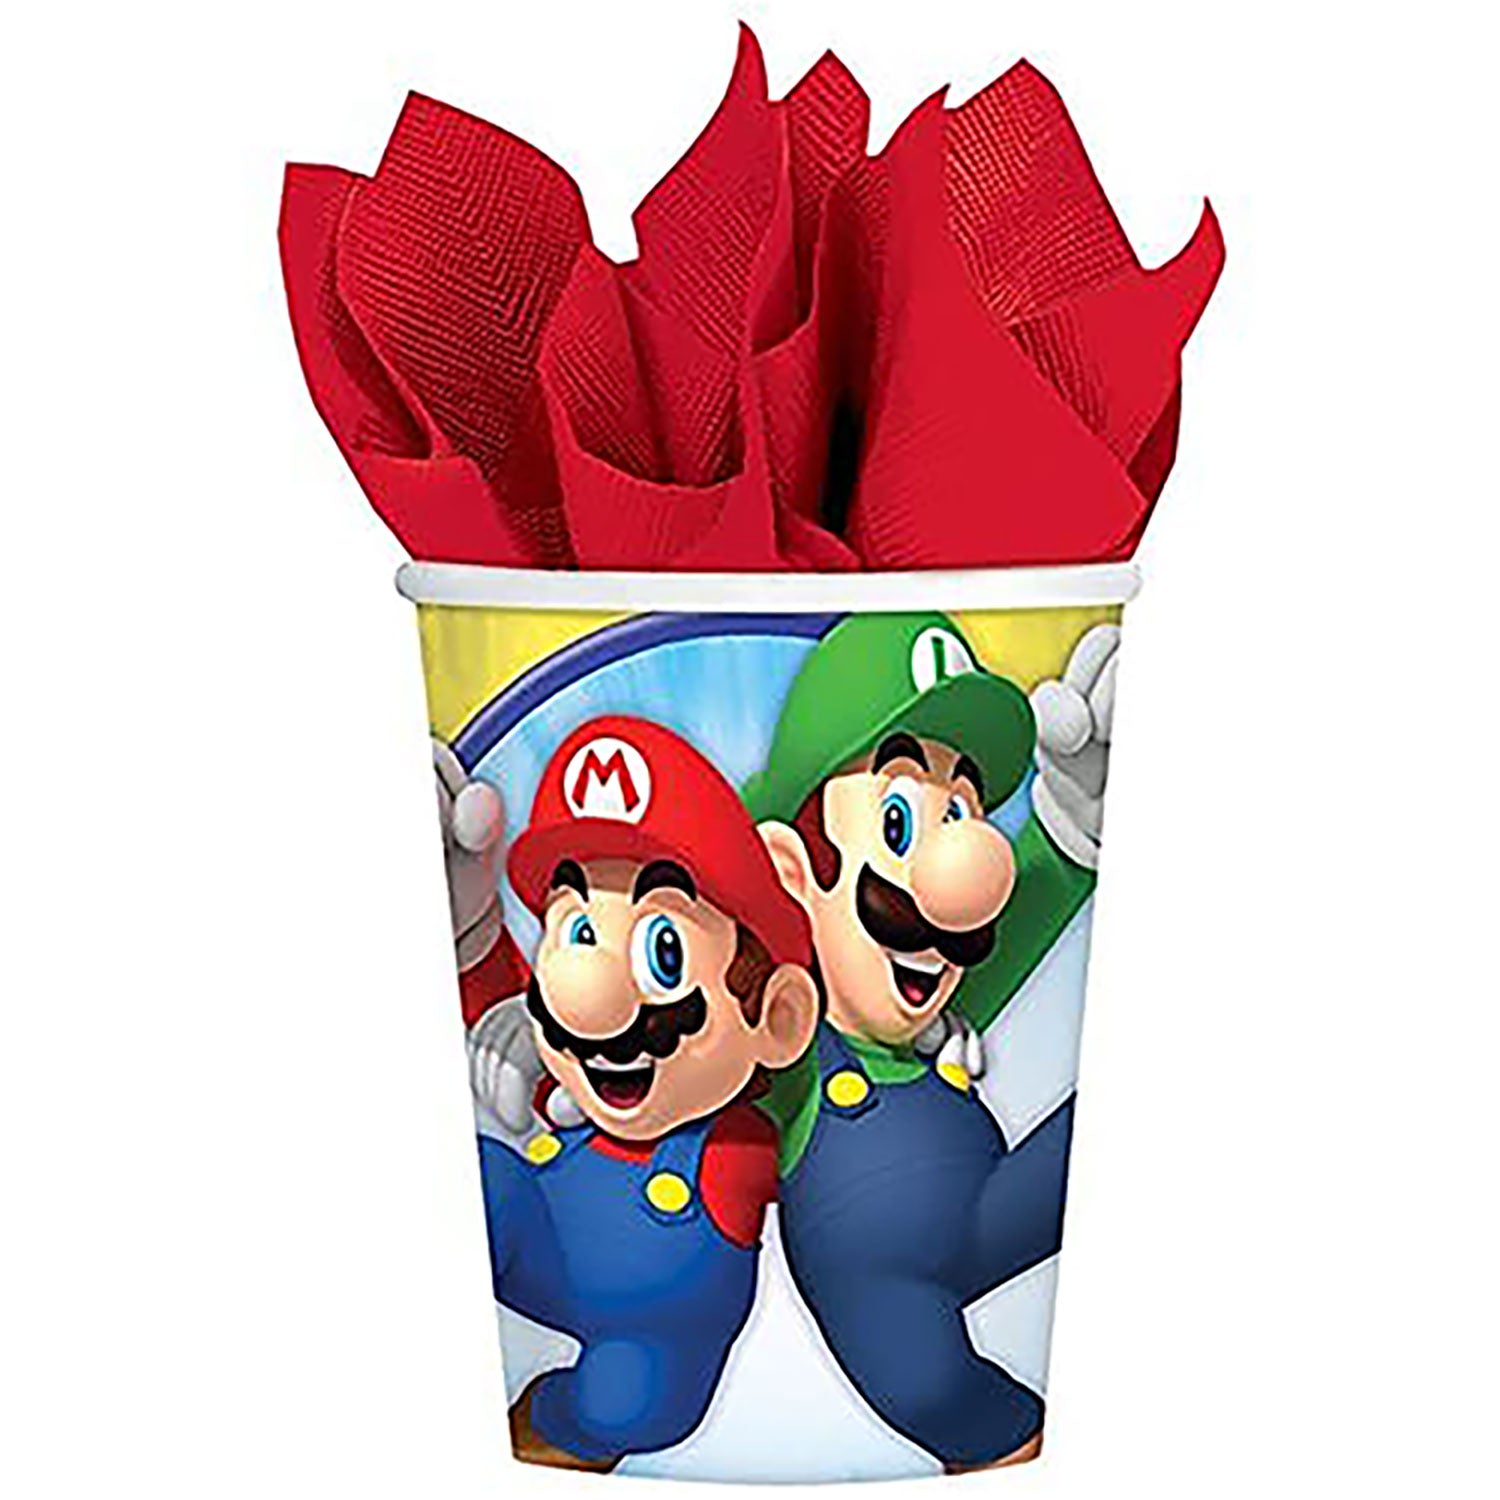 Kit party Super Mario Bros bicchieri piatti tovaglia tovaglioli palloncini 4959